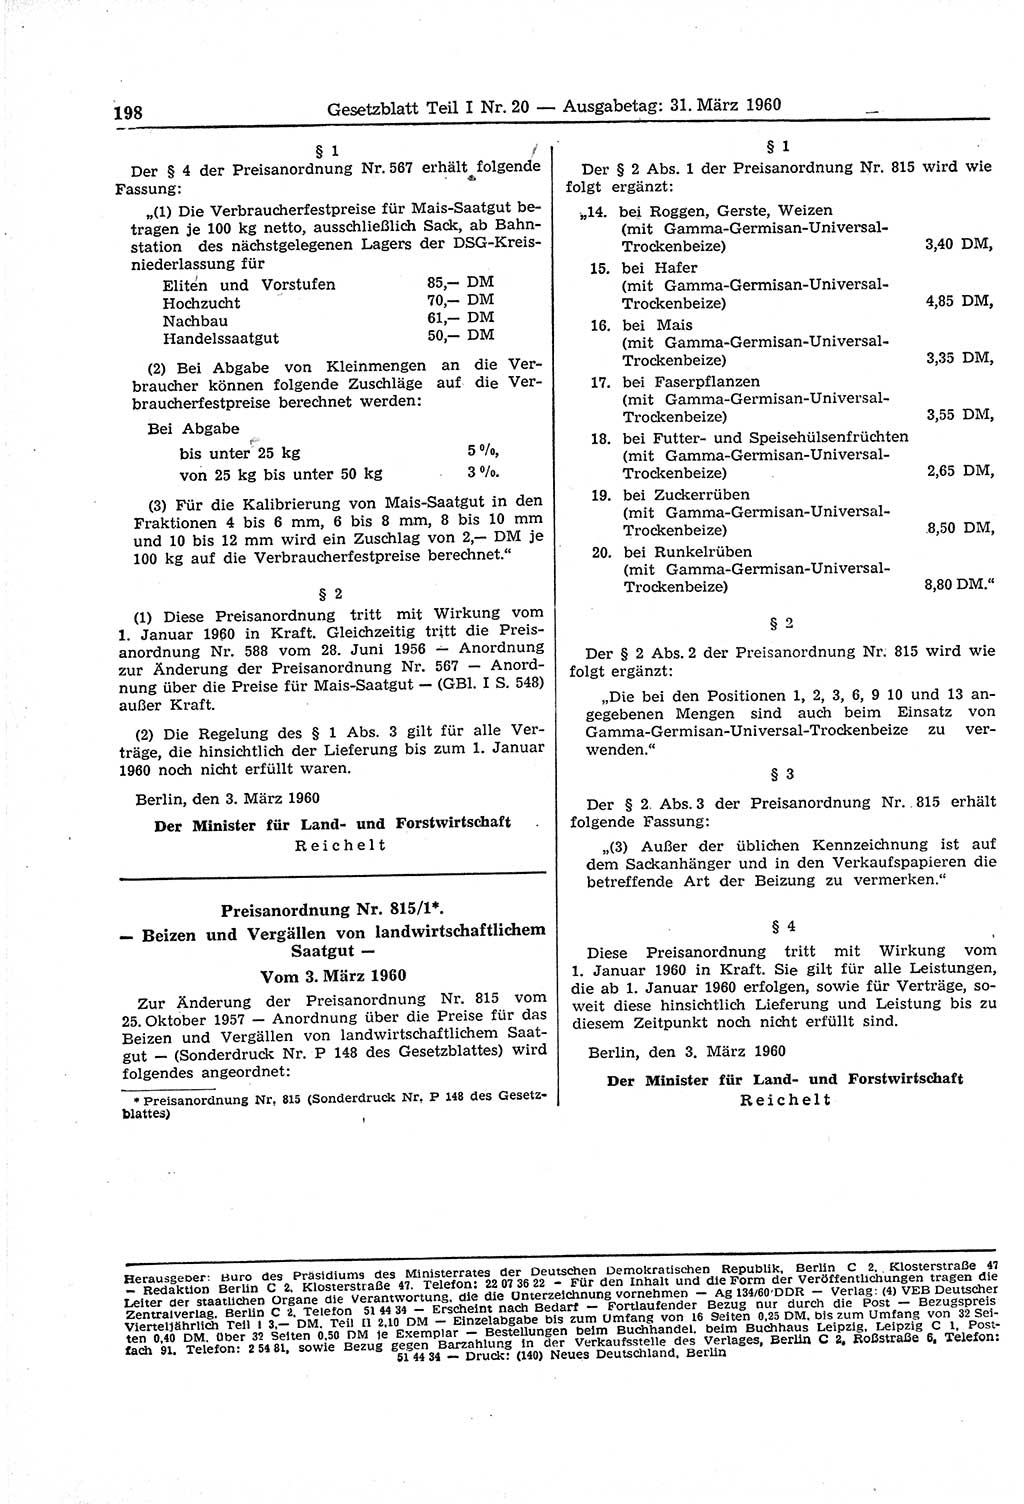 Gesetzblatt (GBl.) der Deutschen Demokratischen Republik (DDR) Teil Ⅰ 1960, Seite 198 (GBl. DDR Ⅰ 1960, S. 198)